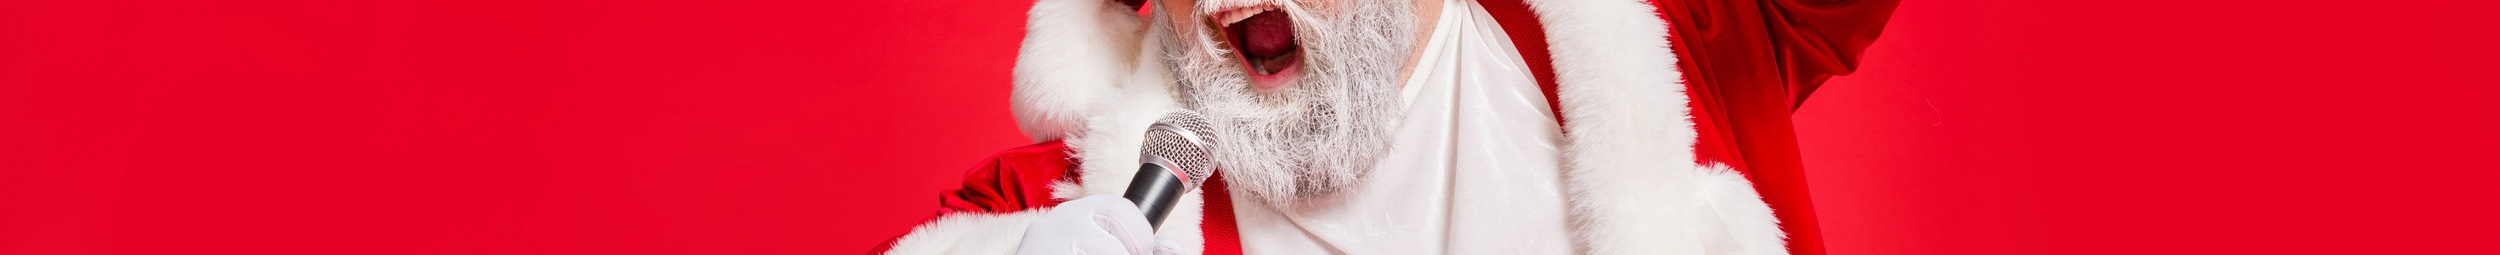 Wat gaf Wham! tijdens de vorige kerst volgens hun kerstliedje "Last Christmas"? 13